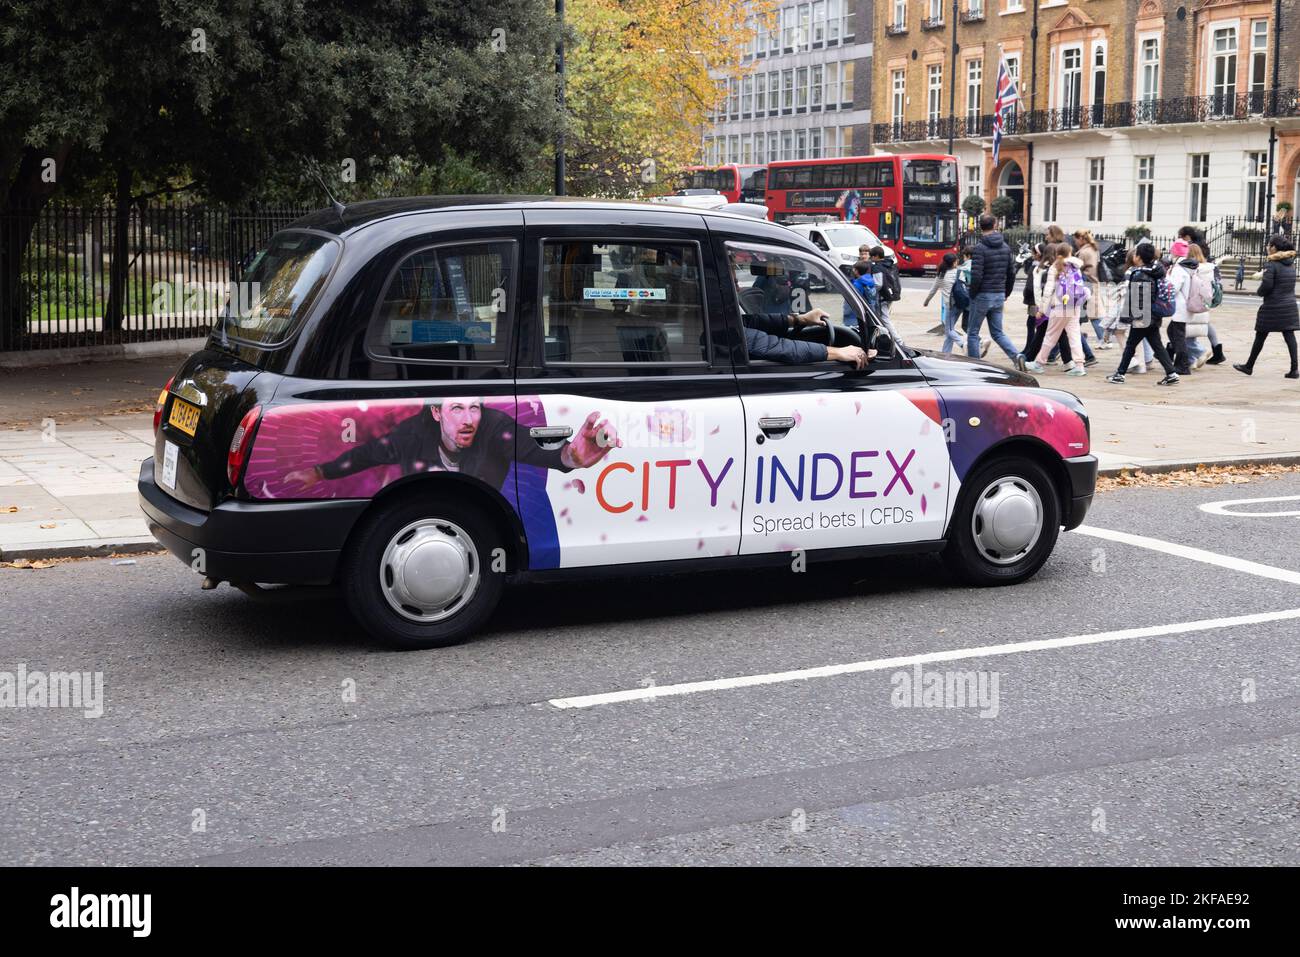 London Taxi Werbung; London Black Cab mit City Index Werbung auf seiner Seite, für ein Spread-Wetten-Finanzunternehmen, London UK Stockfoto